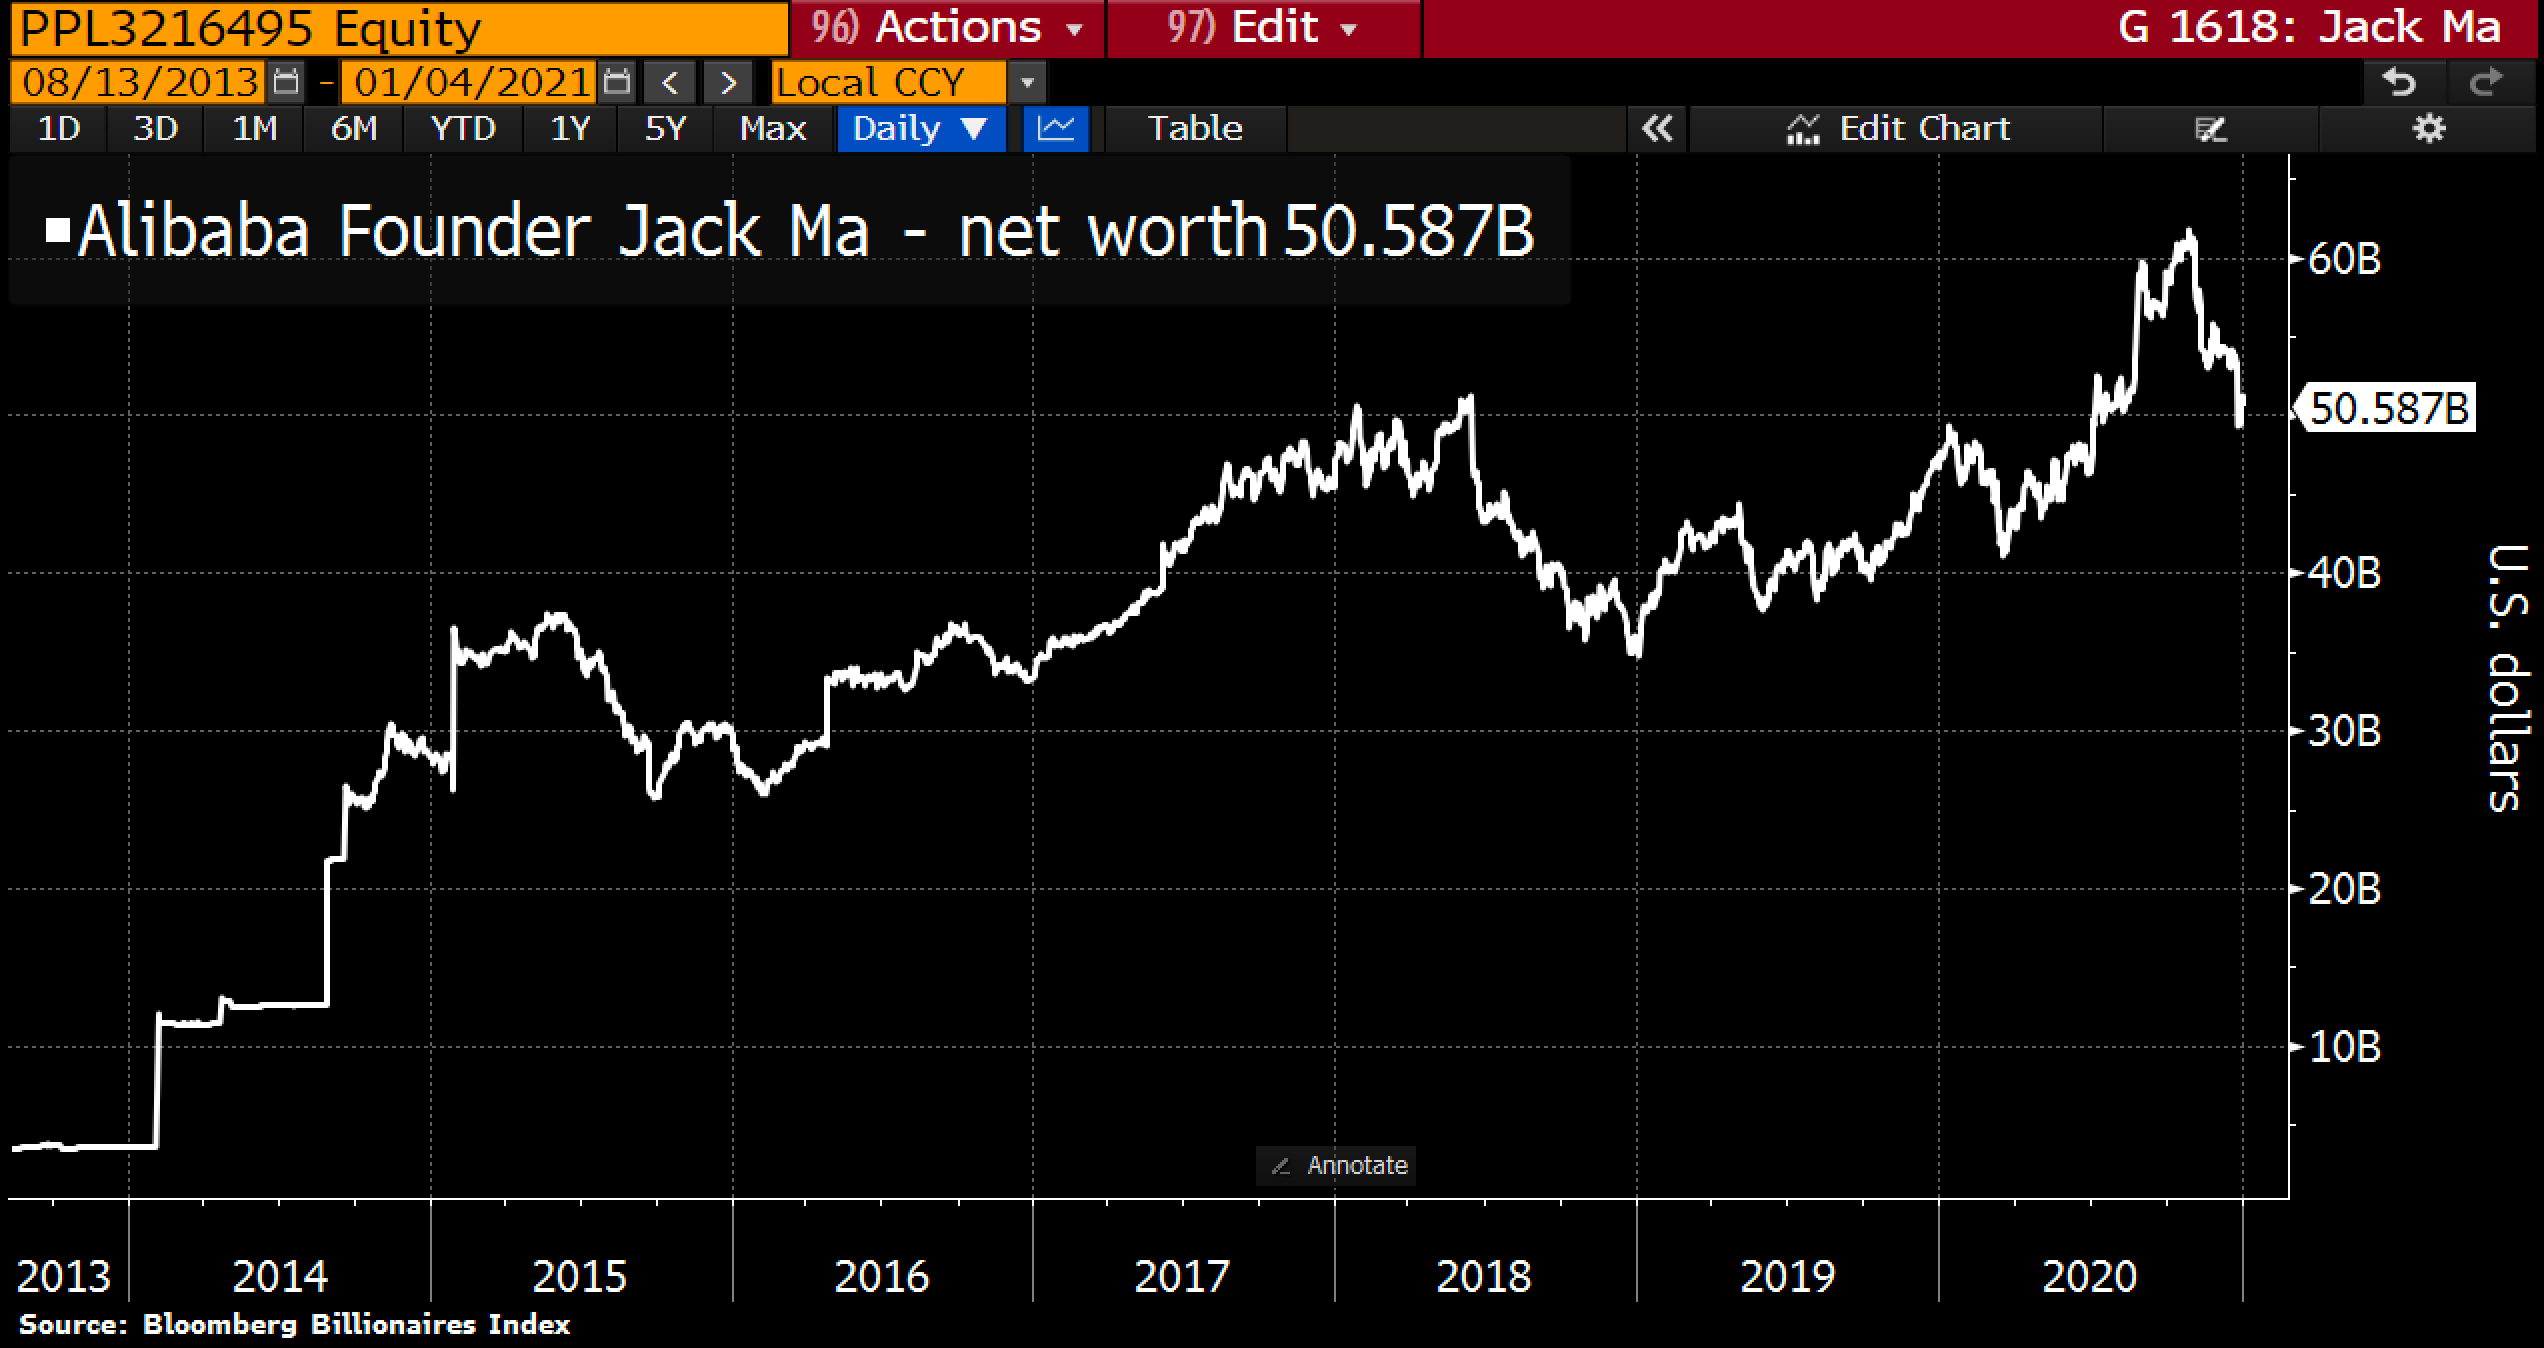 Jack Ma's net worth